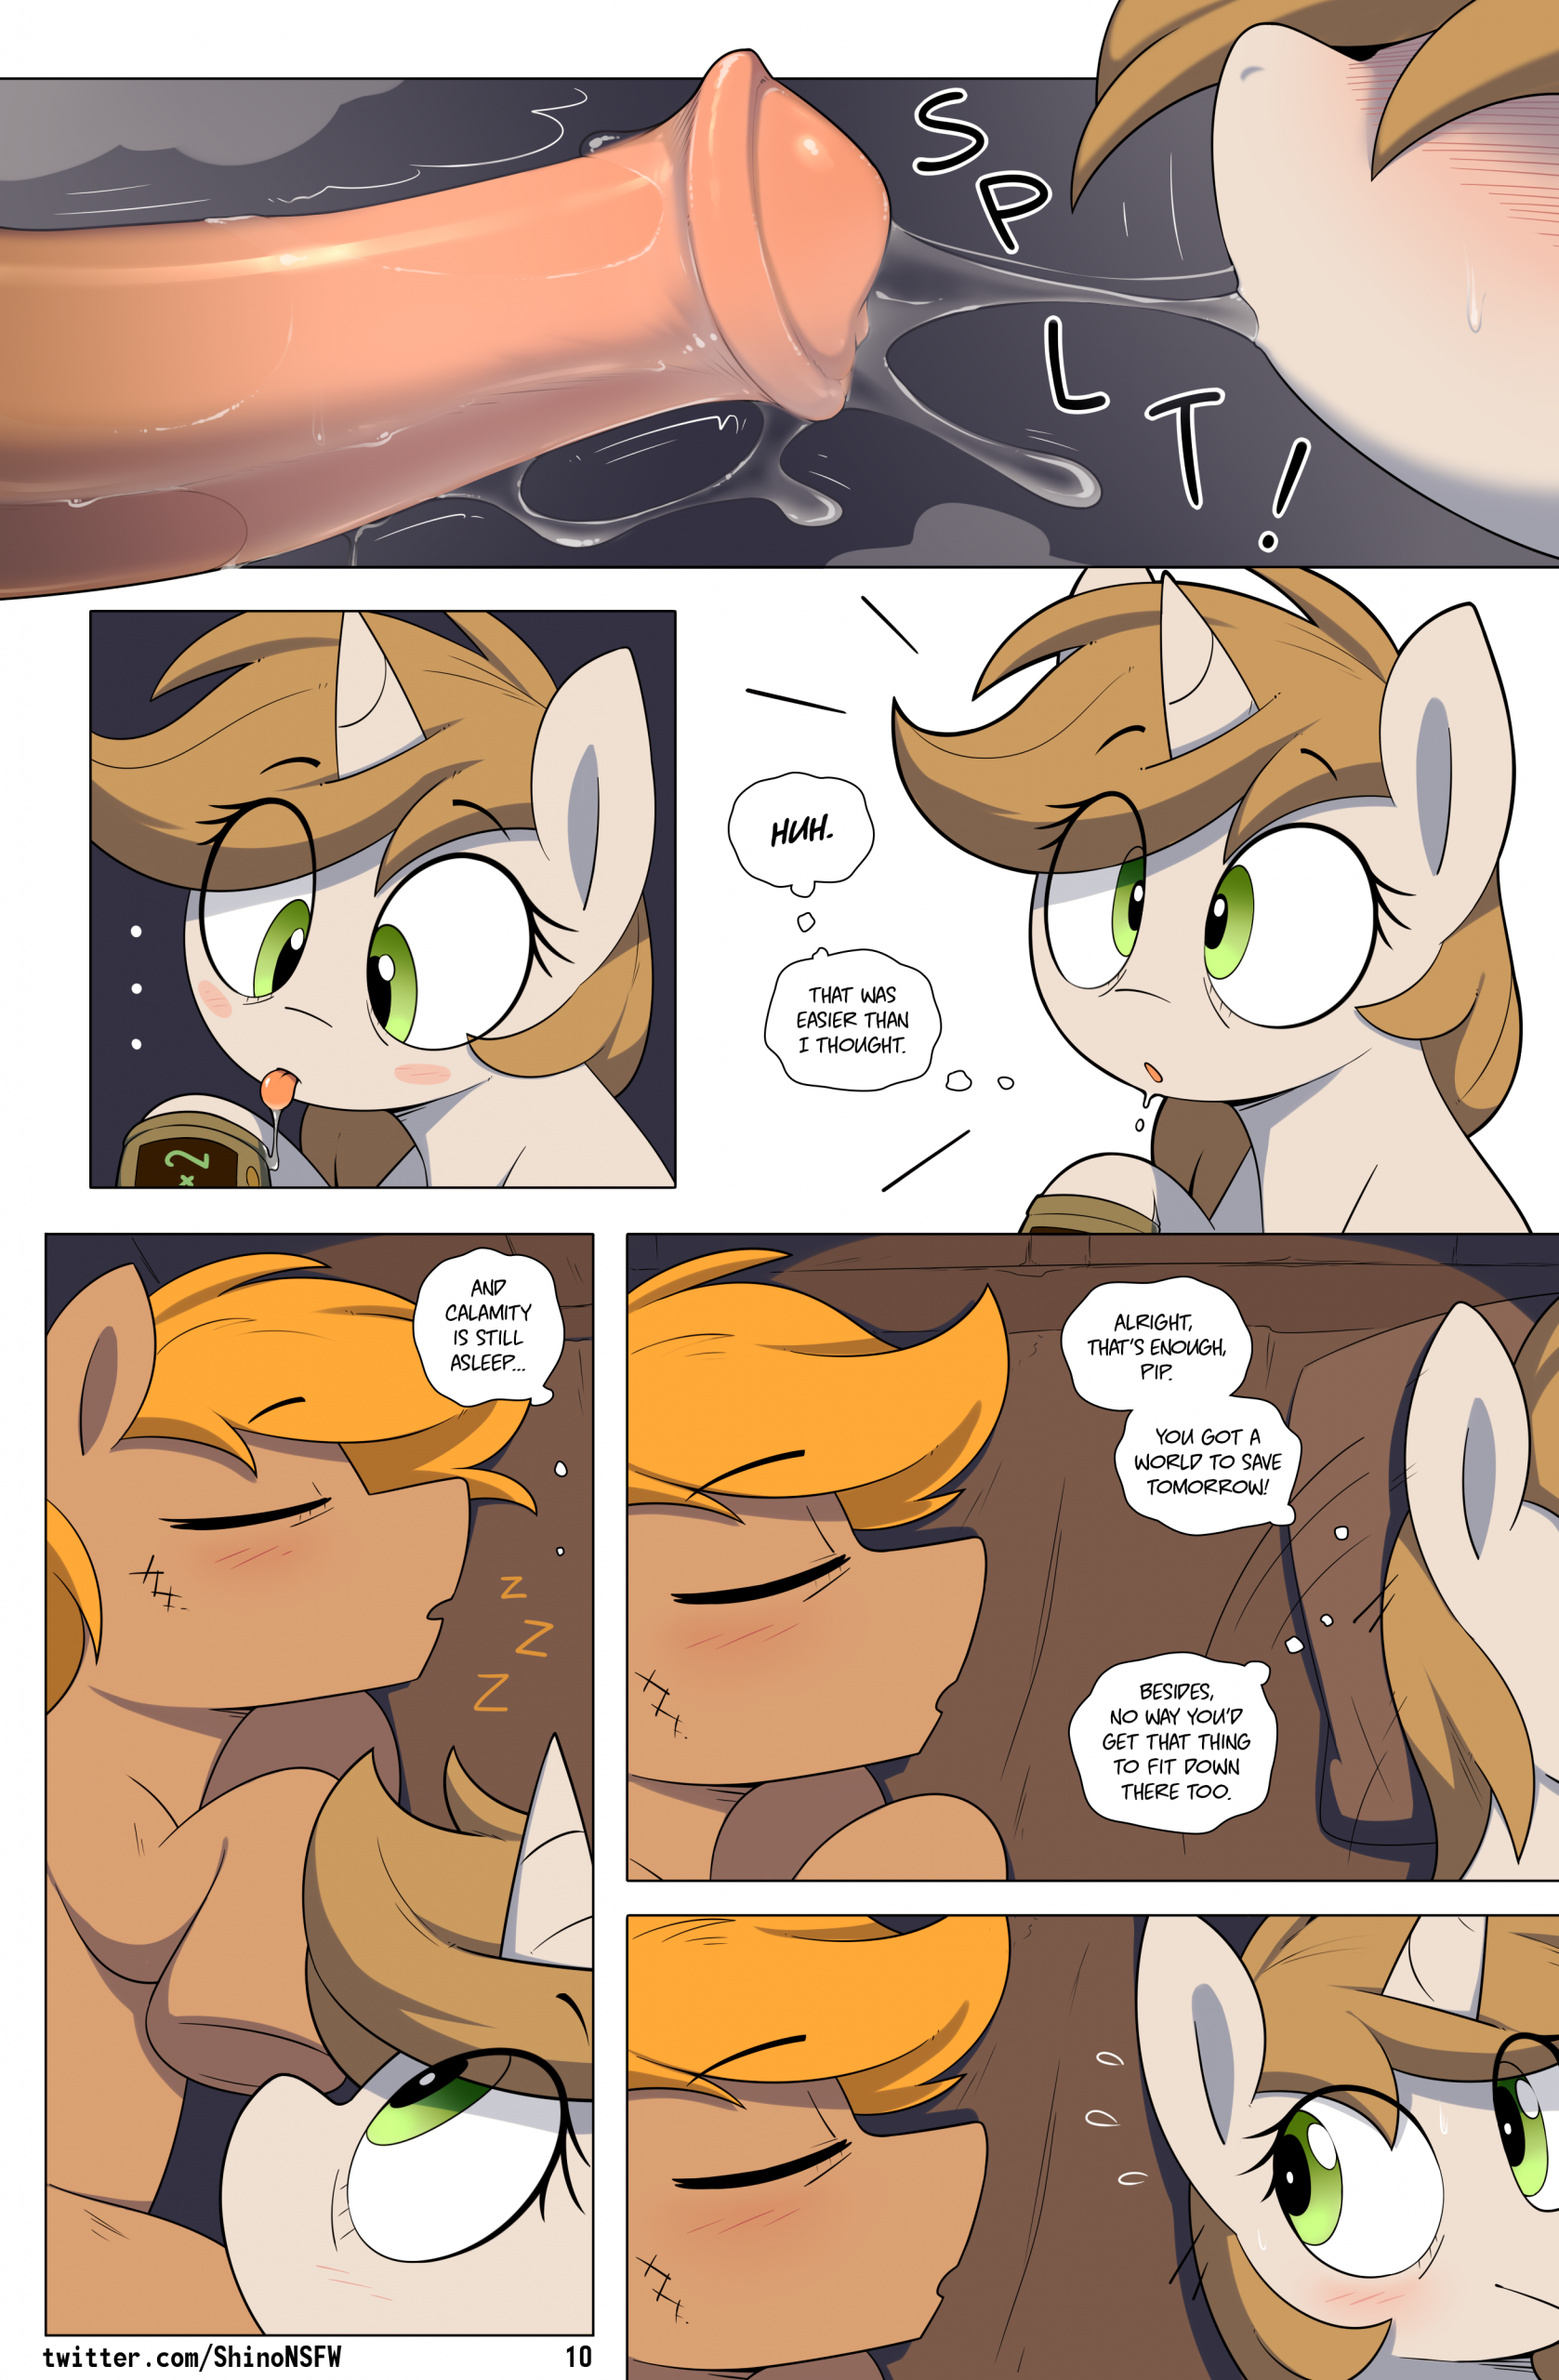 Fallout Equestria: Chain Reaction porn comic picture 10